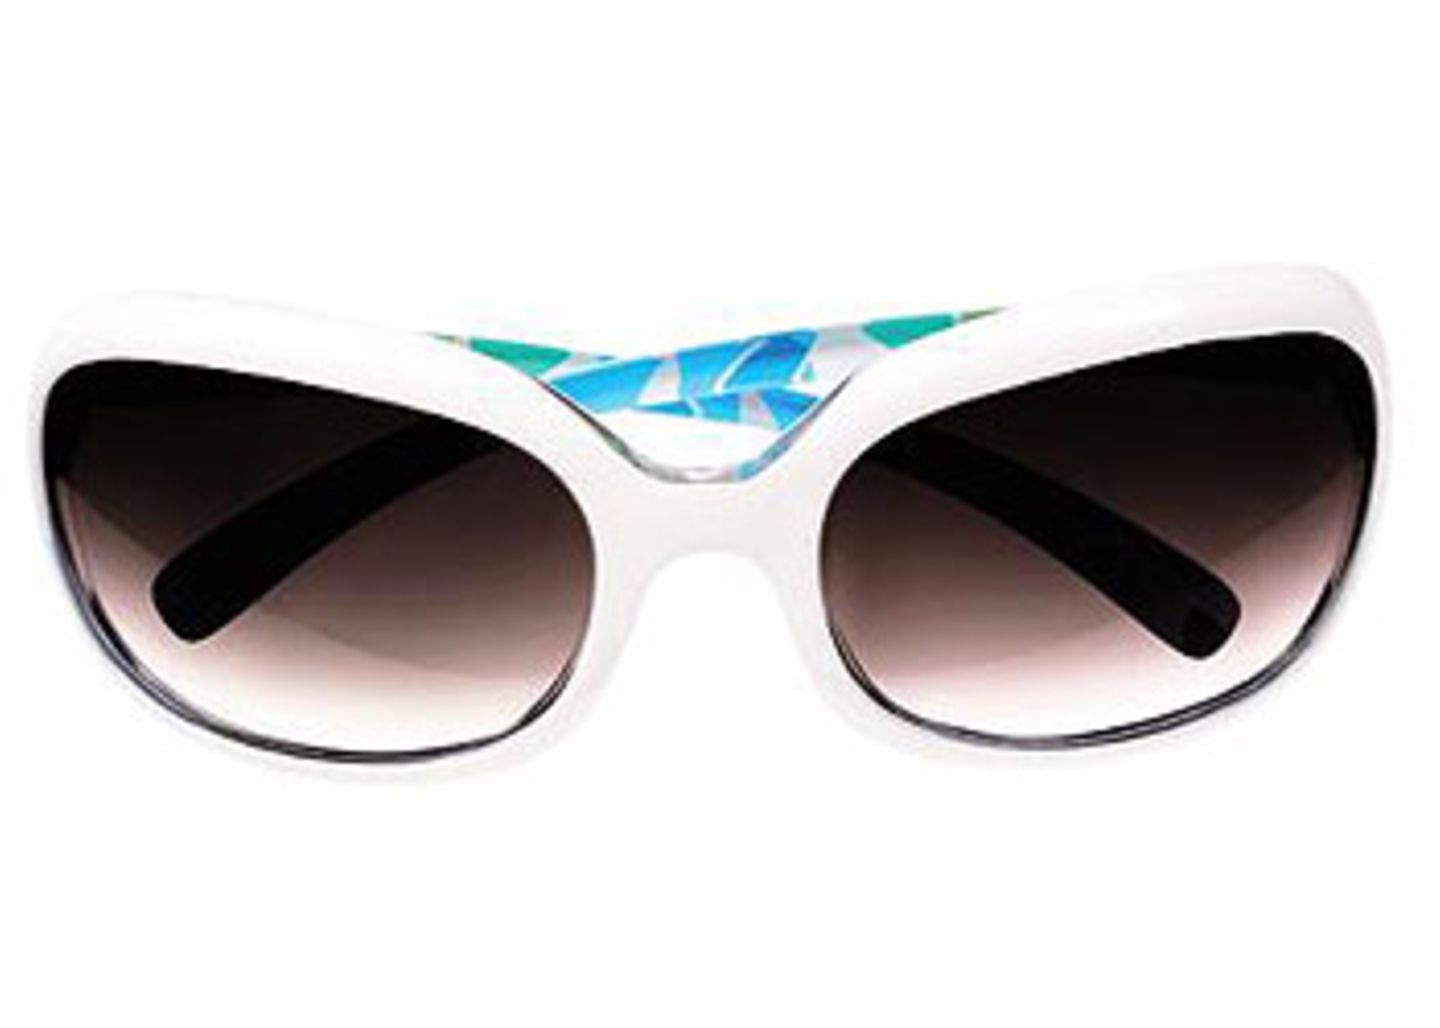 Brille mit weiß-bunter Kunststofffassung und braunen Gläsern; 19,90 Euro; von H&M